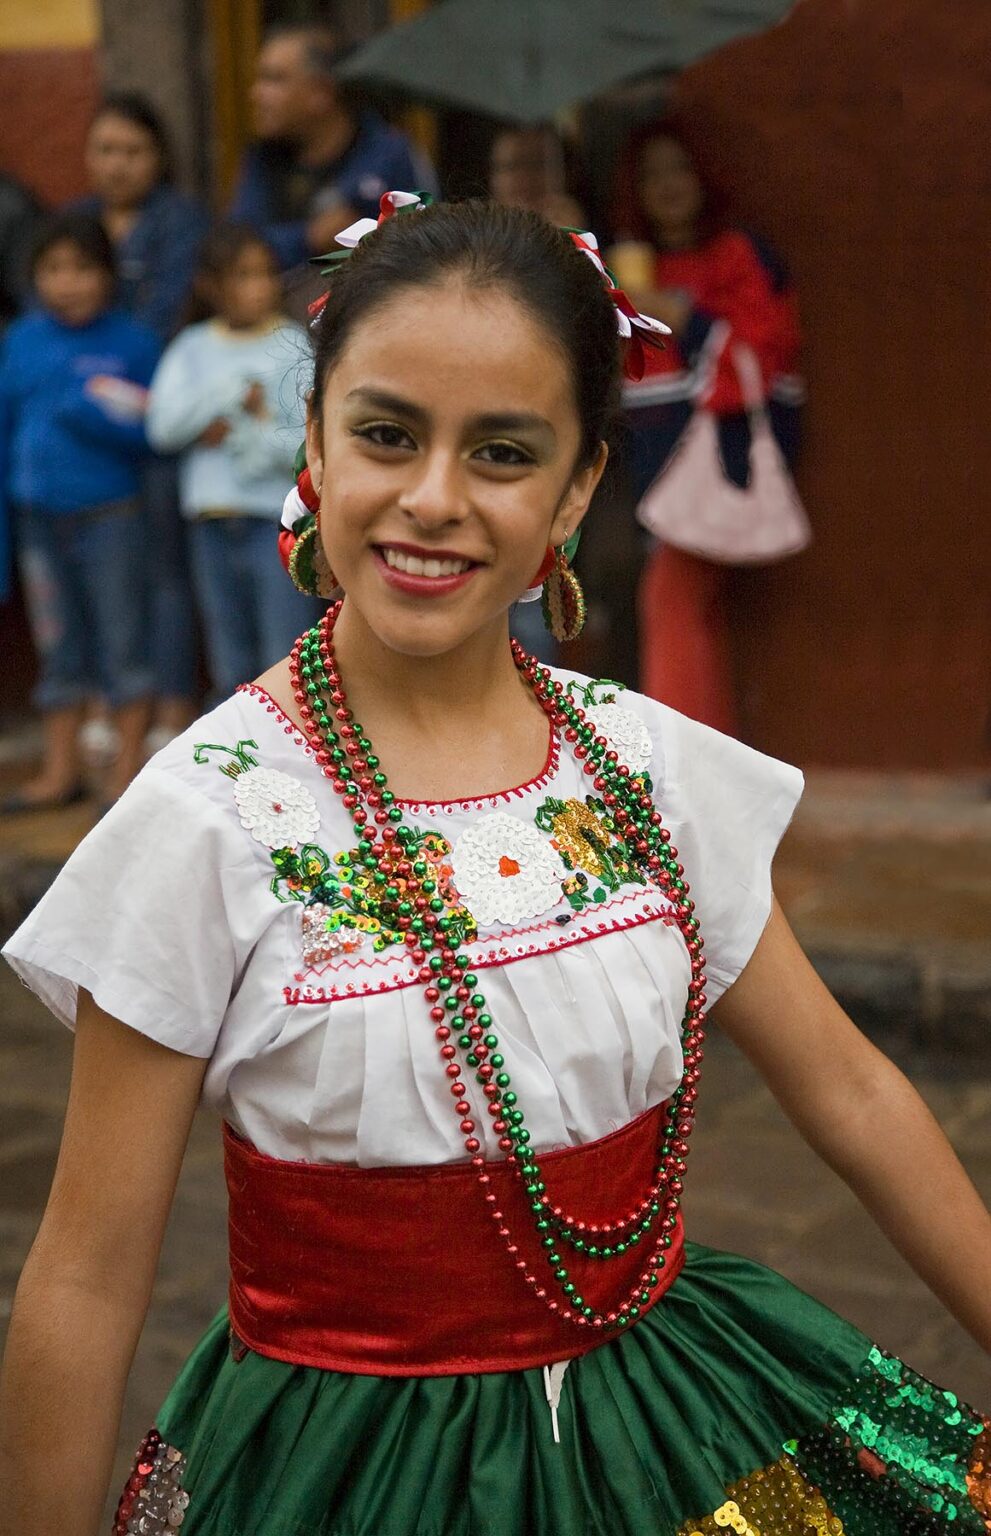 A MEXICAN woman in traditional PEASANT COSTUME walks in the FESTIVAL DE SAN MIGUEL ARCHANGEL PARADE - SAN MIGUEL DE ALLENDE, MEXICO